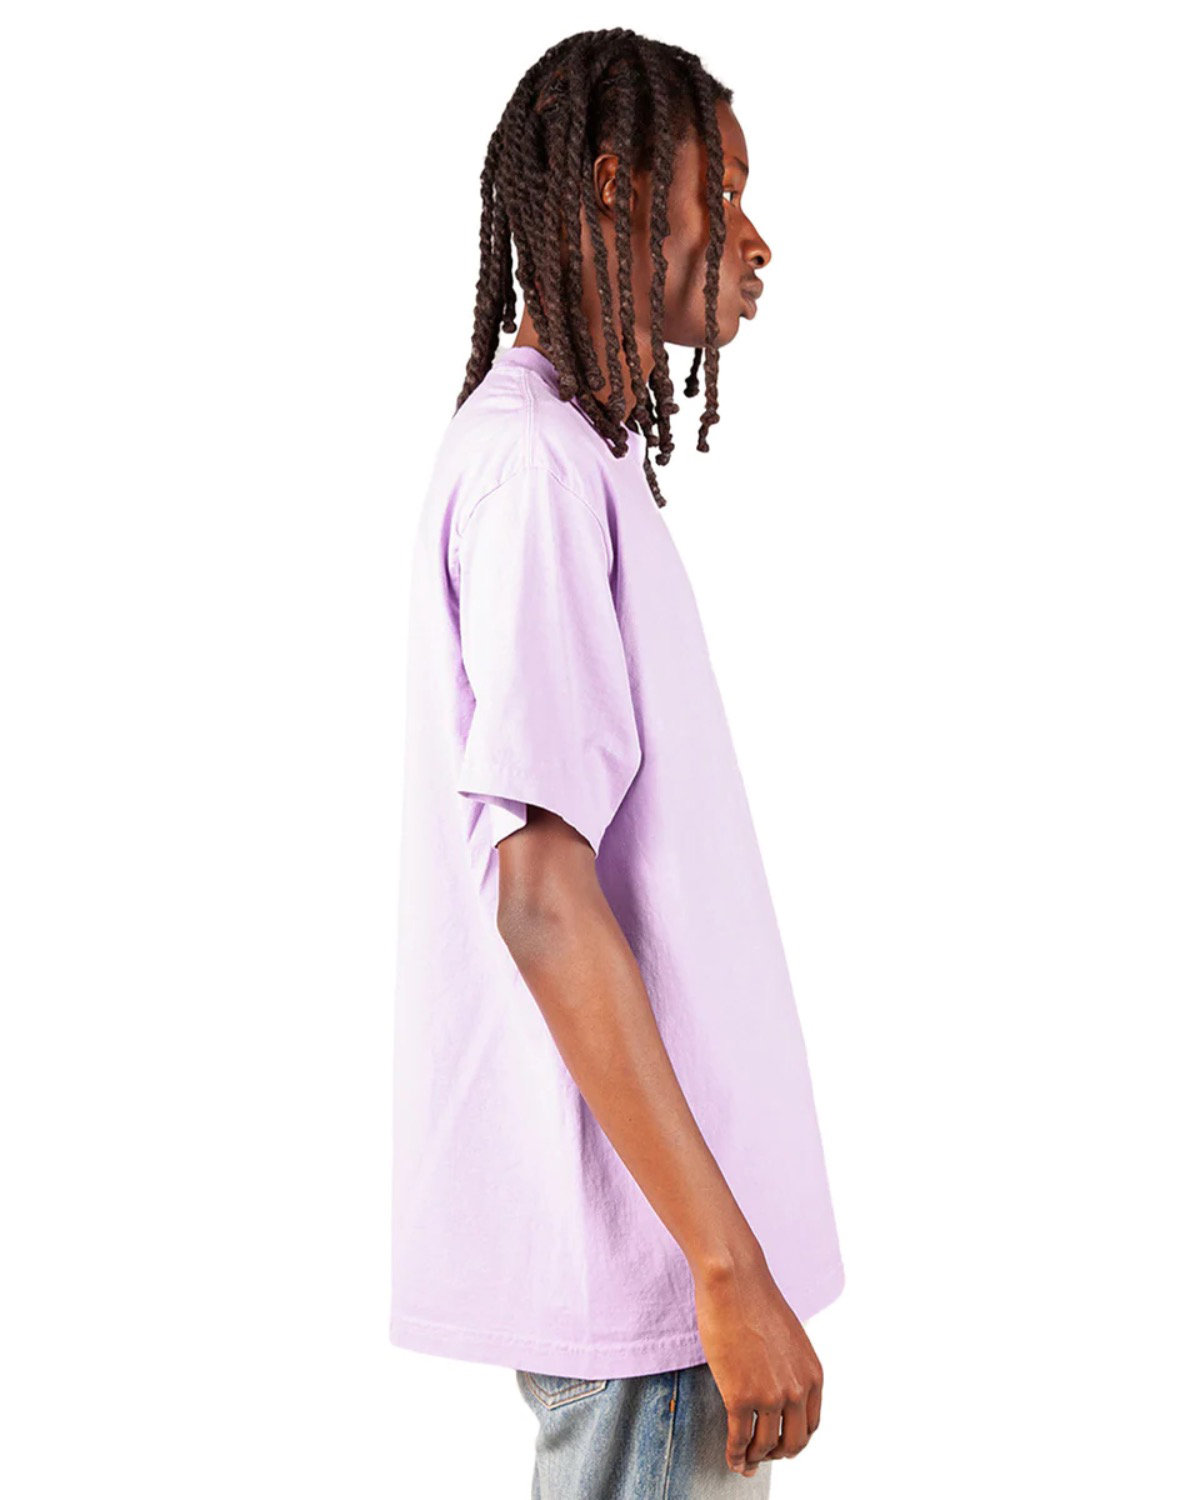 Shaka Wear Garment-Dyed Crewneck T-Shirt | alphabroder